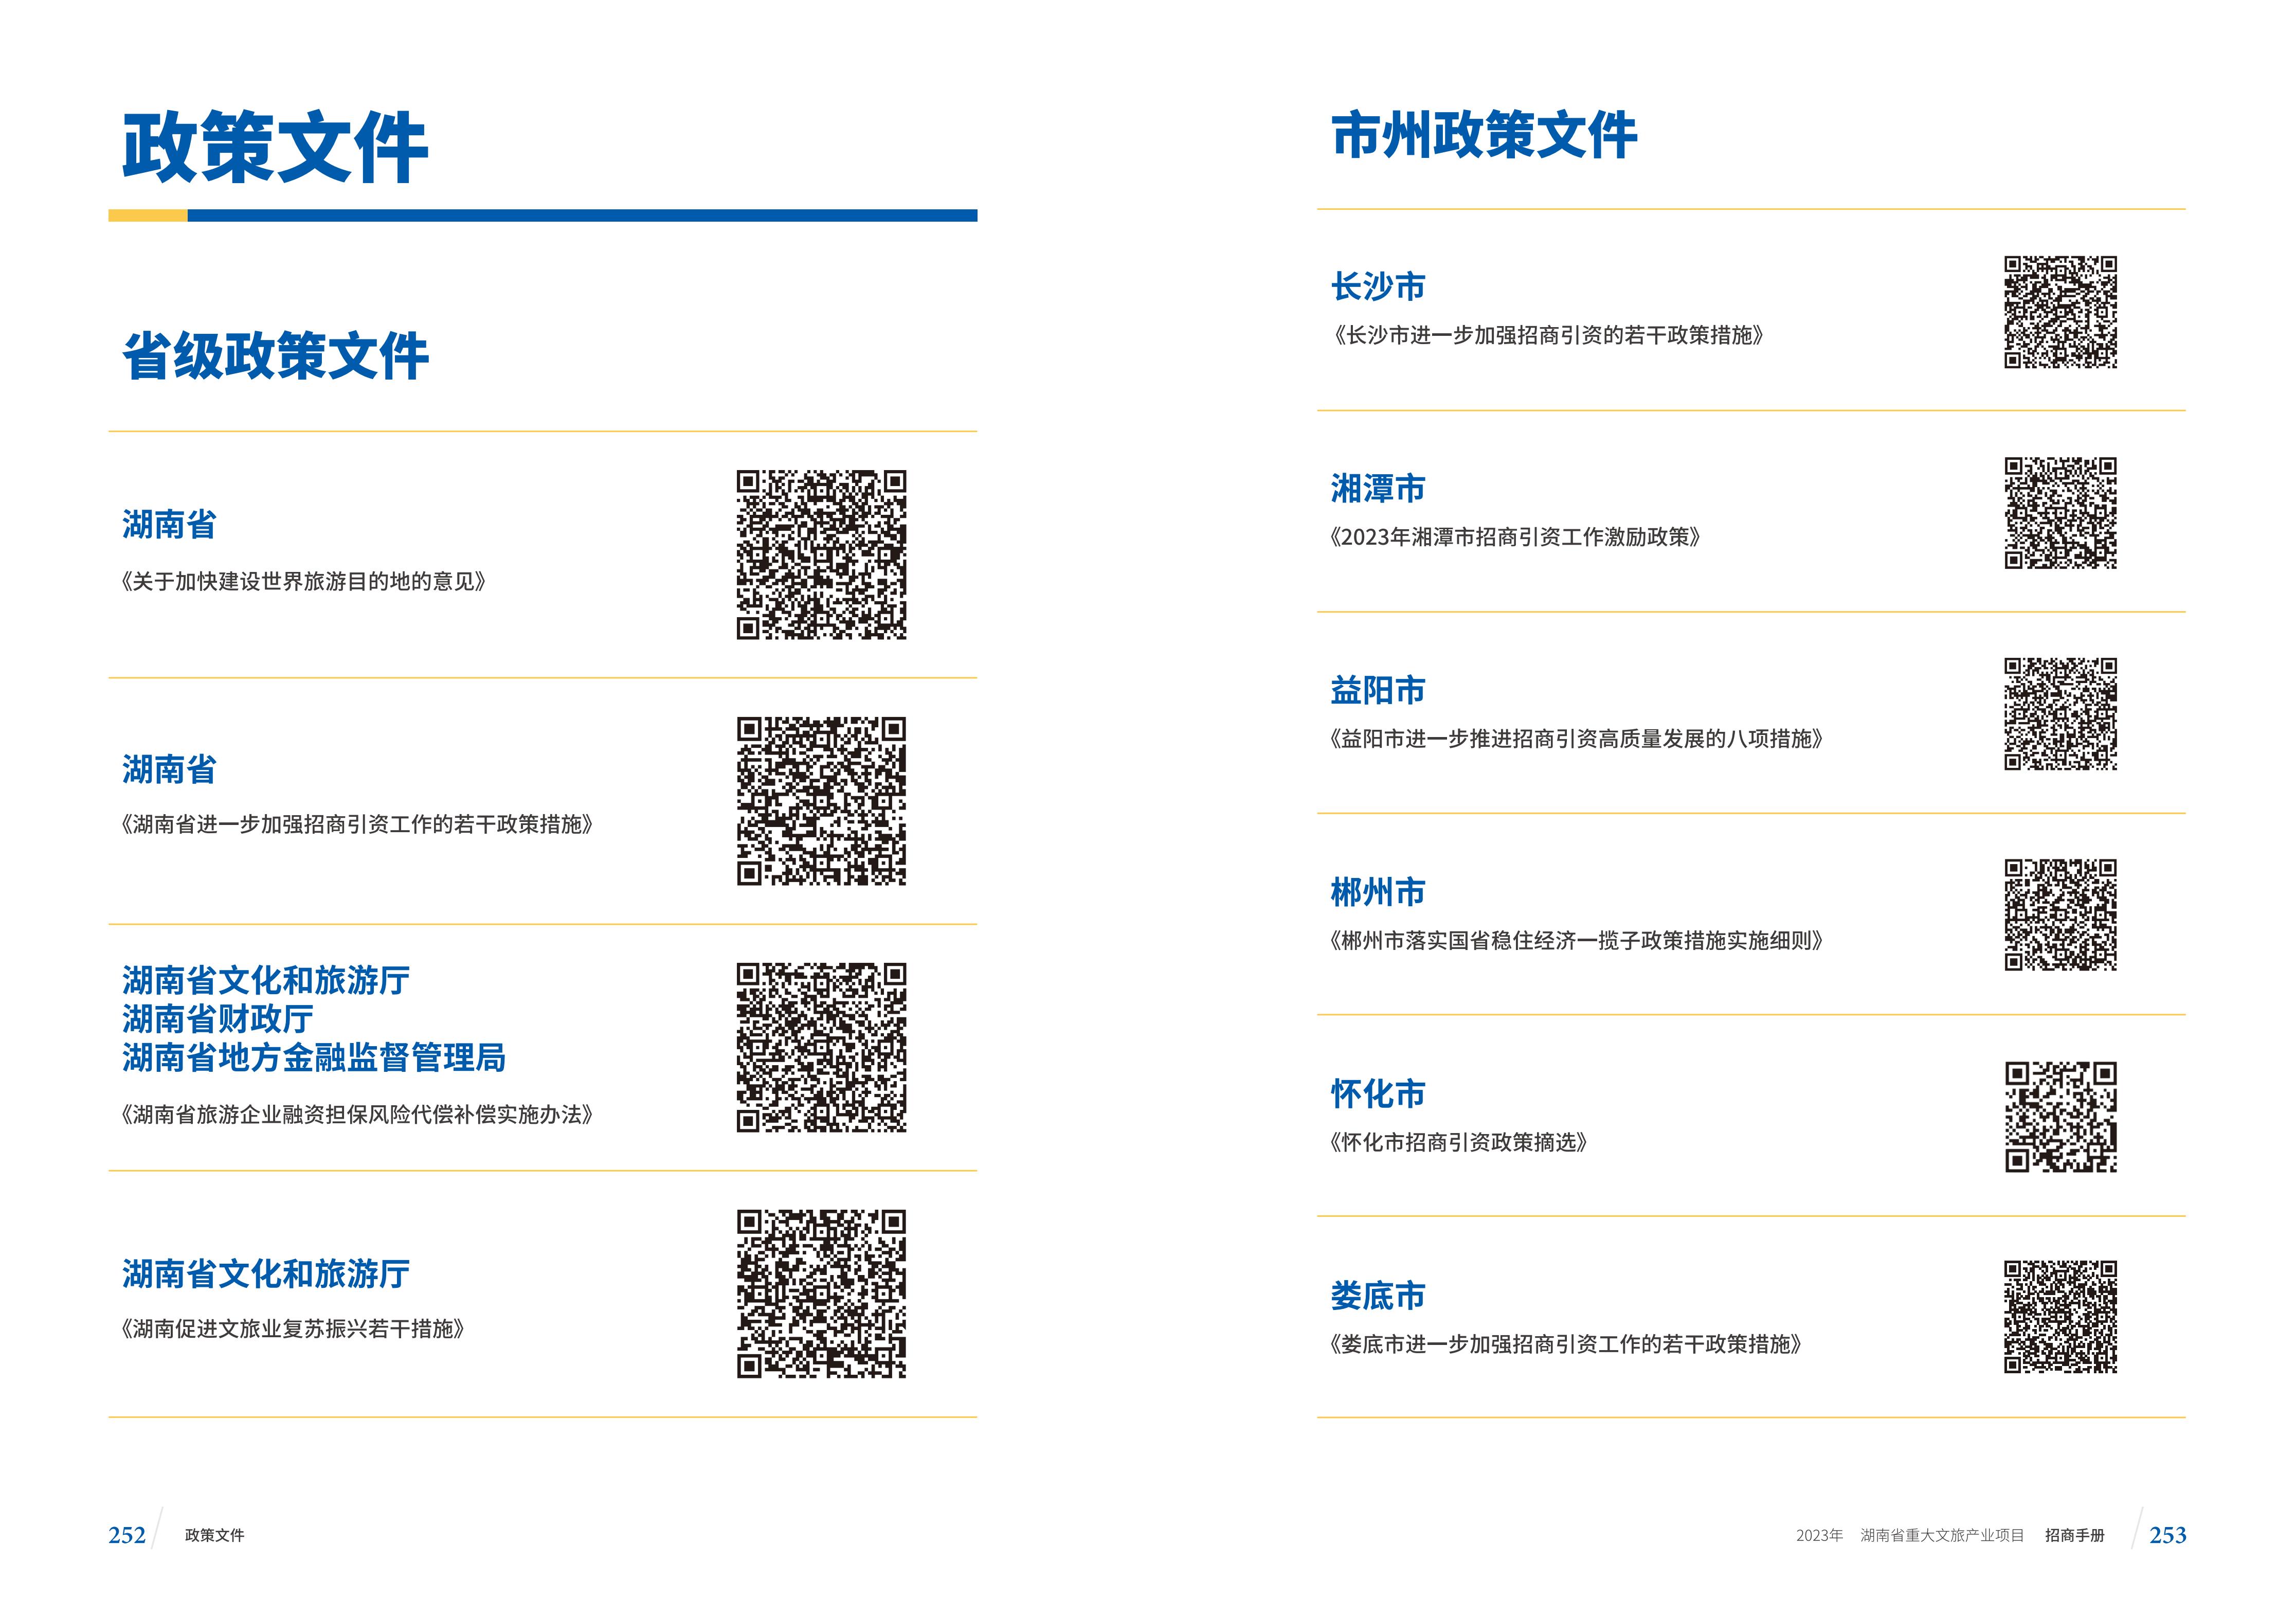 湖南省重大文旅产业项目招手册线上链接版_134.jpg